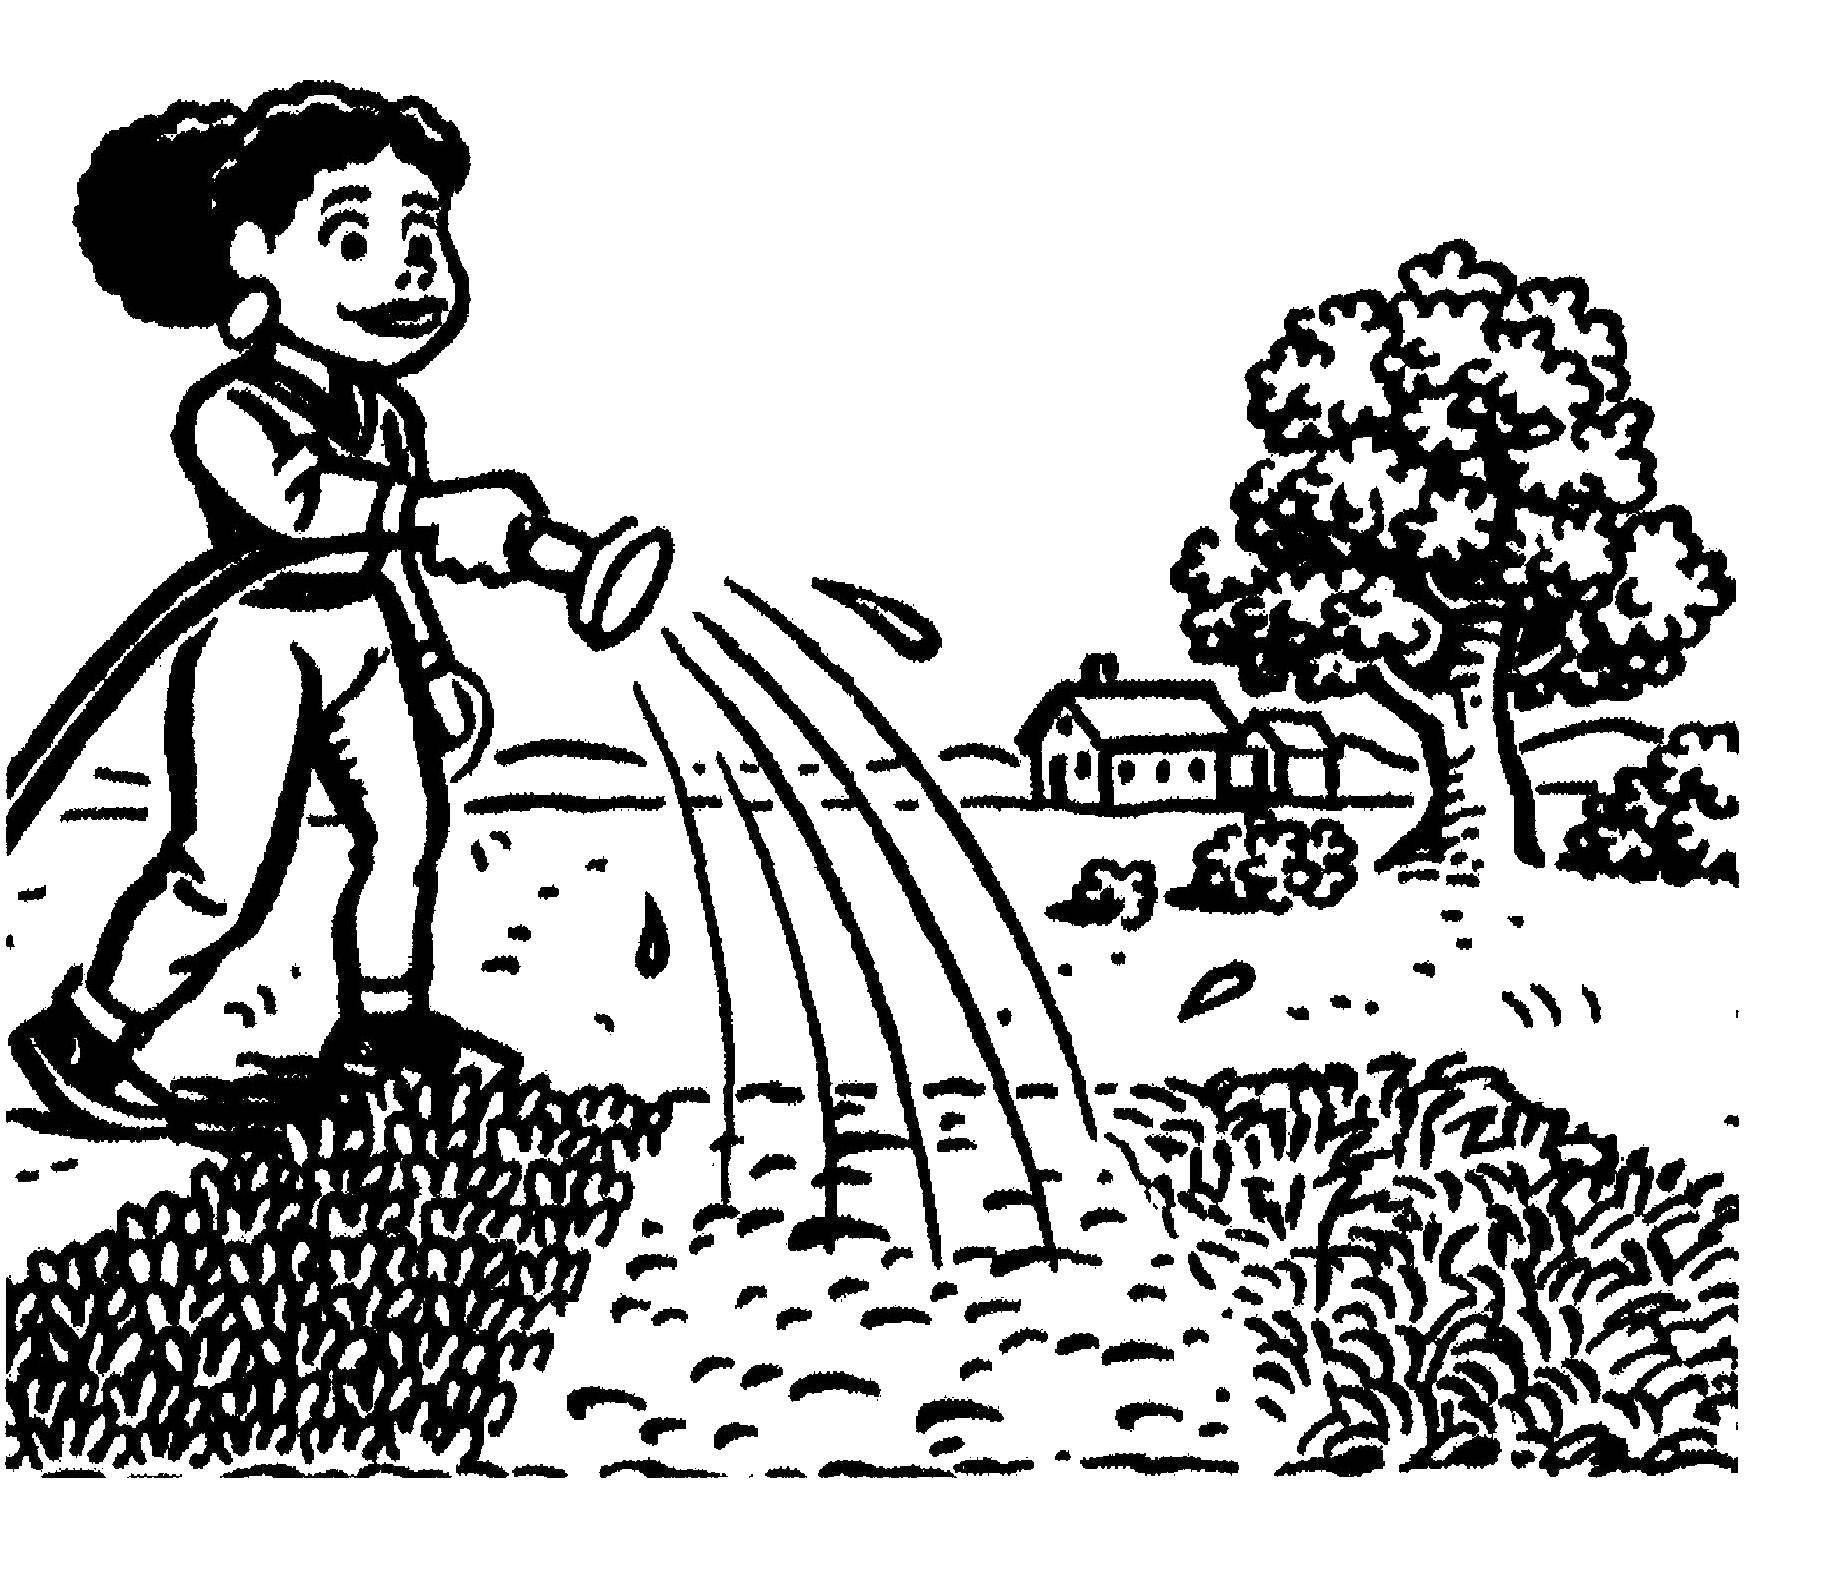 Coloring Girl watering vegetable garden. Category vegetable garden. Tags:  girl, vegetable garden, watering.